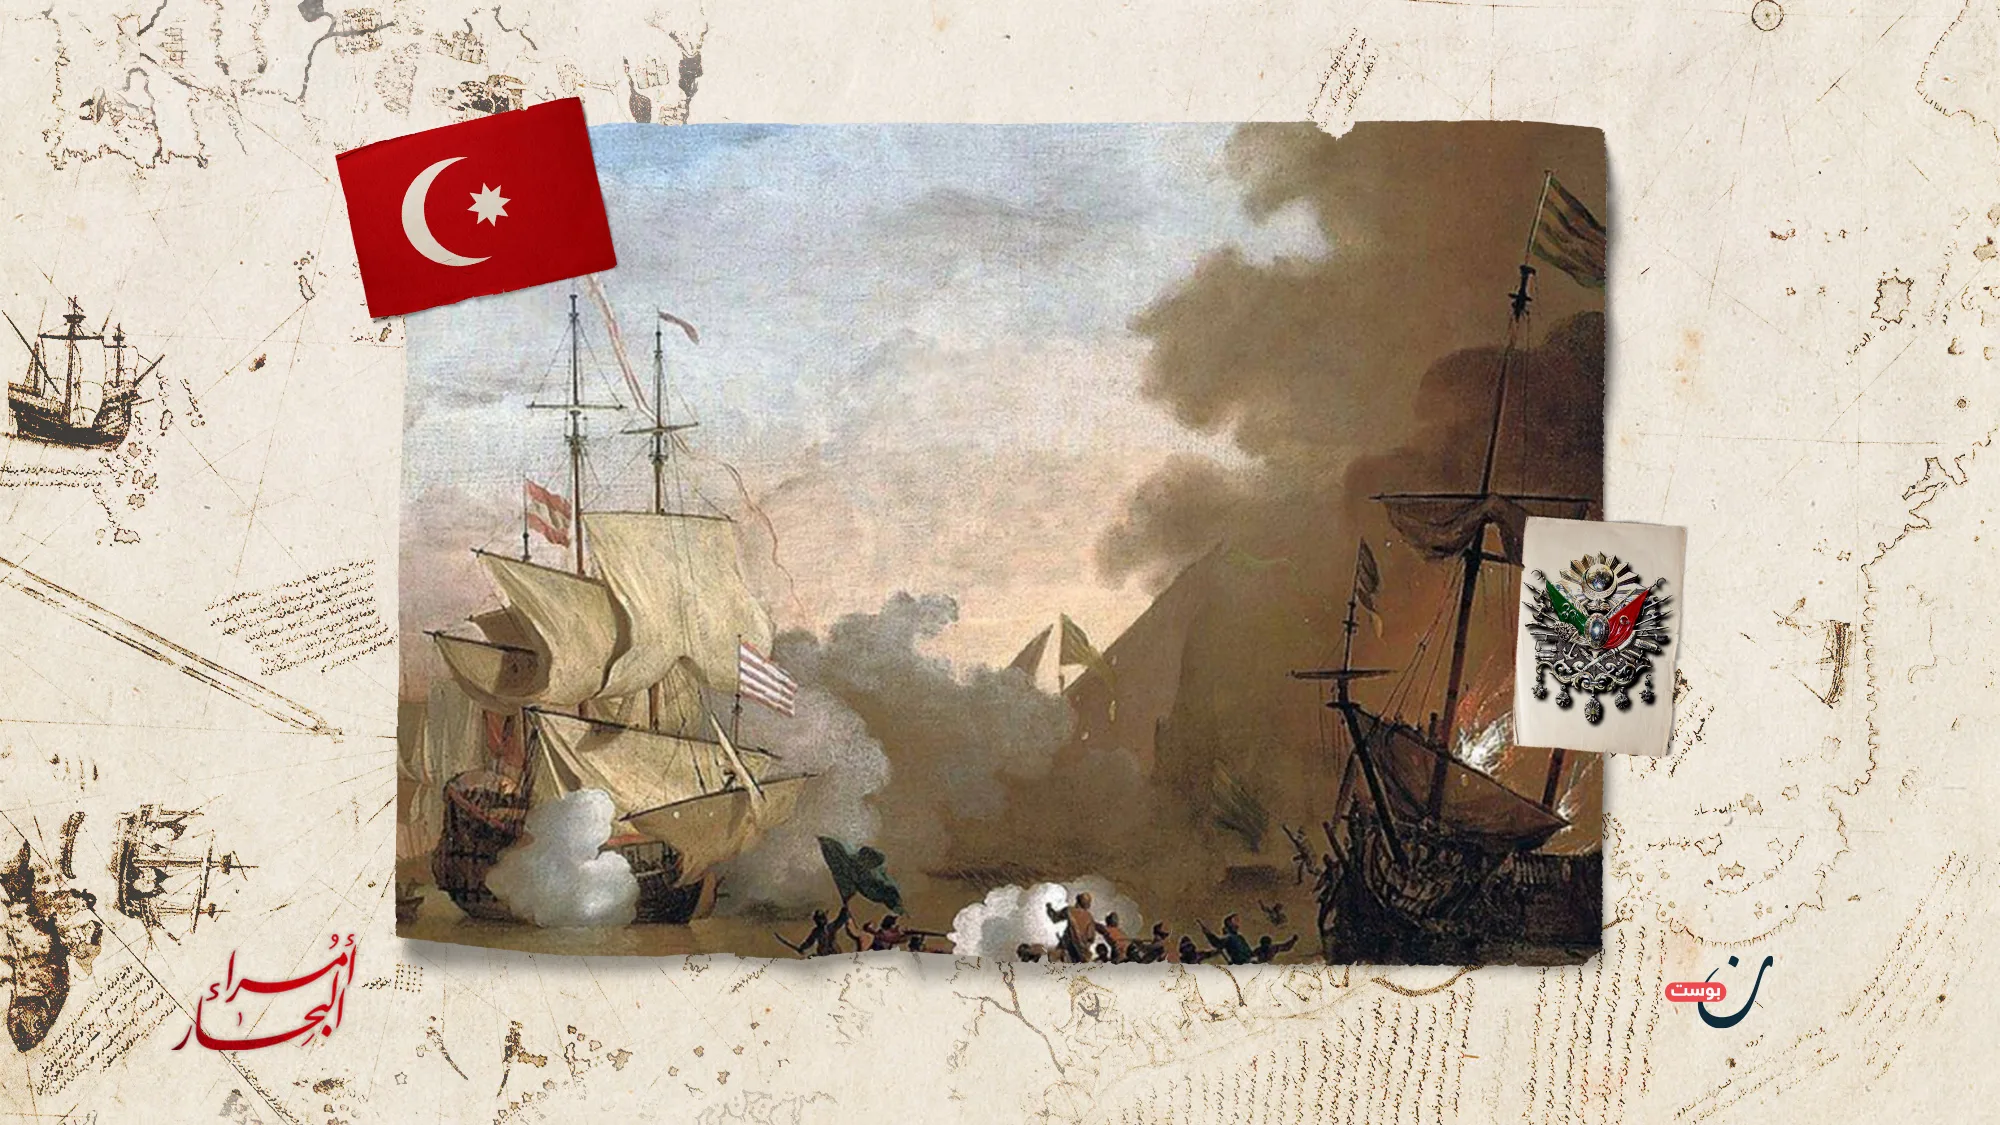 مراد-ريس-الأكبر-أمير-الأسطول-العثماني-في-المحيط-الهندي-وفاتح-جزر-الكناري